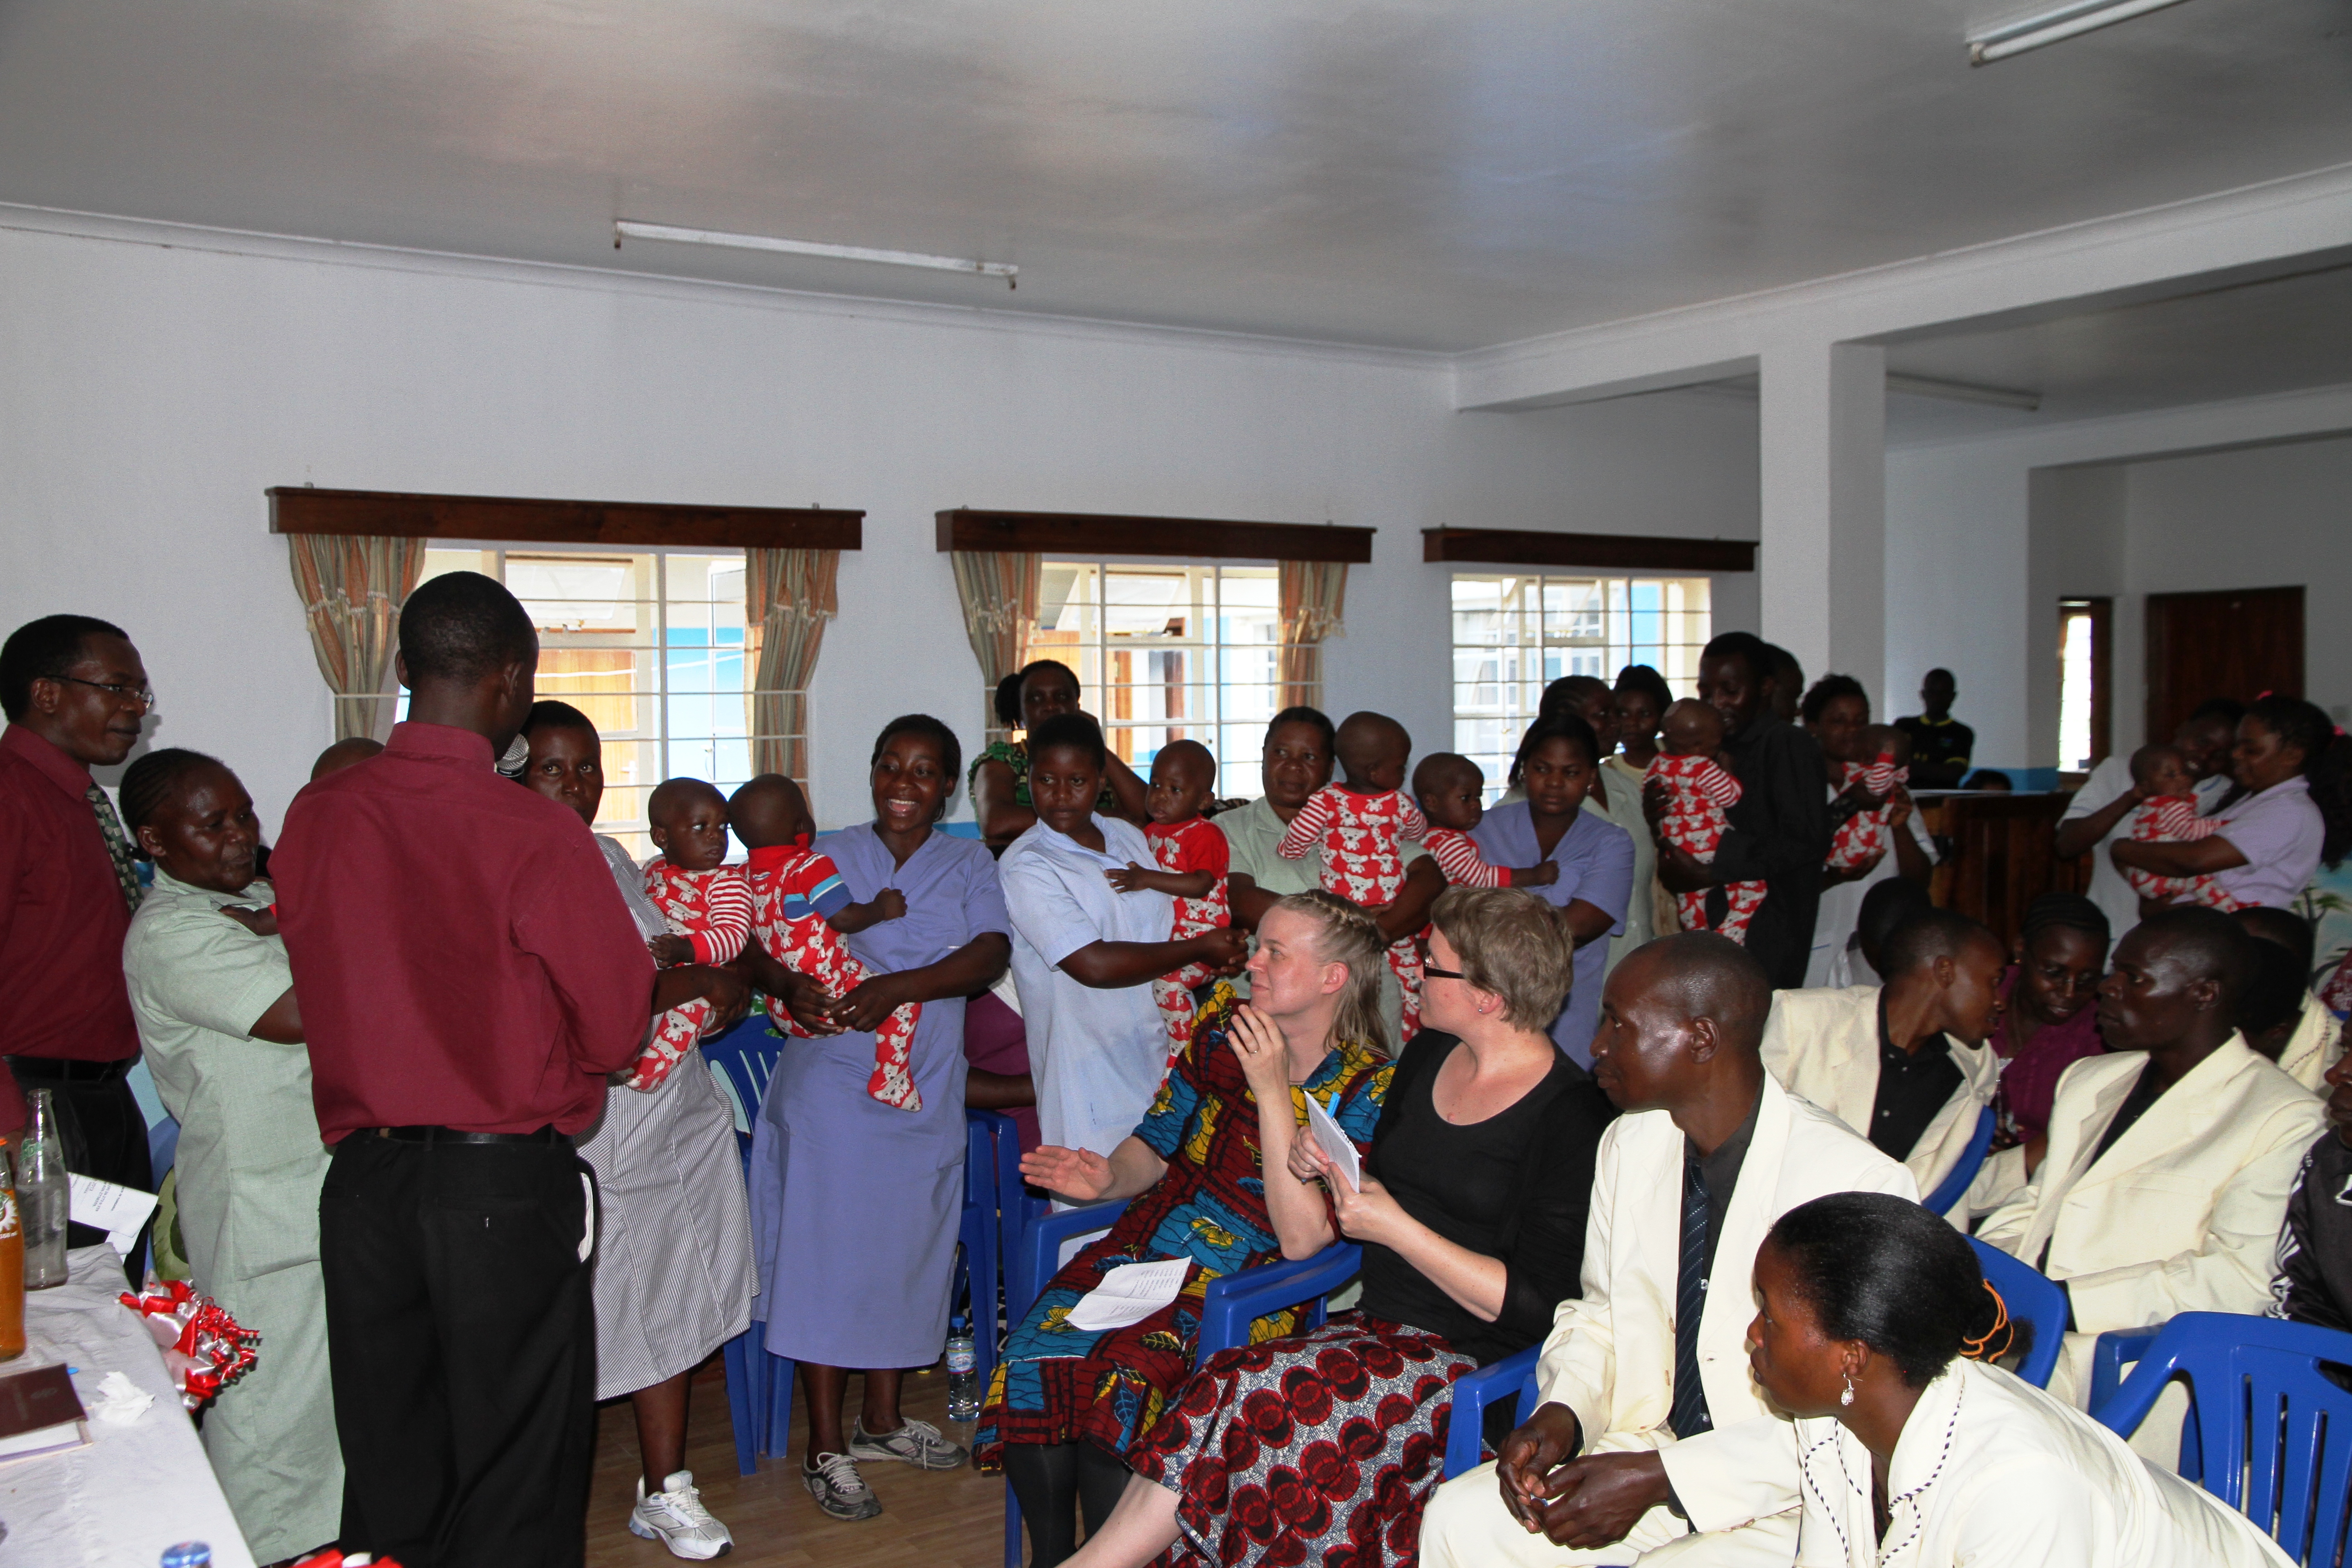 Ilembulan orpokodissa vietettiin kiitosjuhlaa maaliskuussa ja muisteltiin orpokodin ja Lähetysseuran yhteistyötä. Kuva Katri Kuusikallio